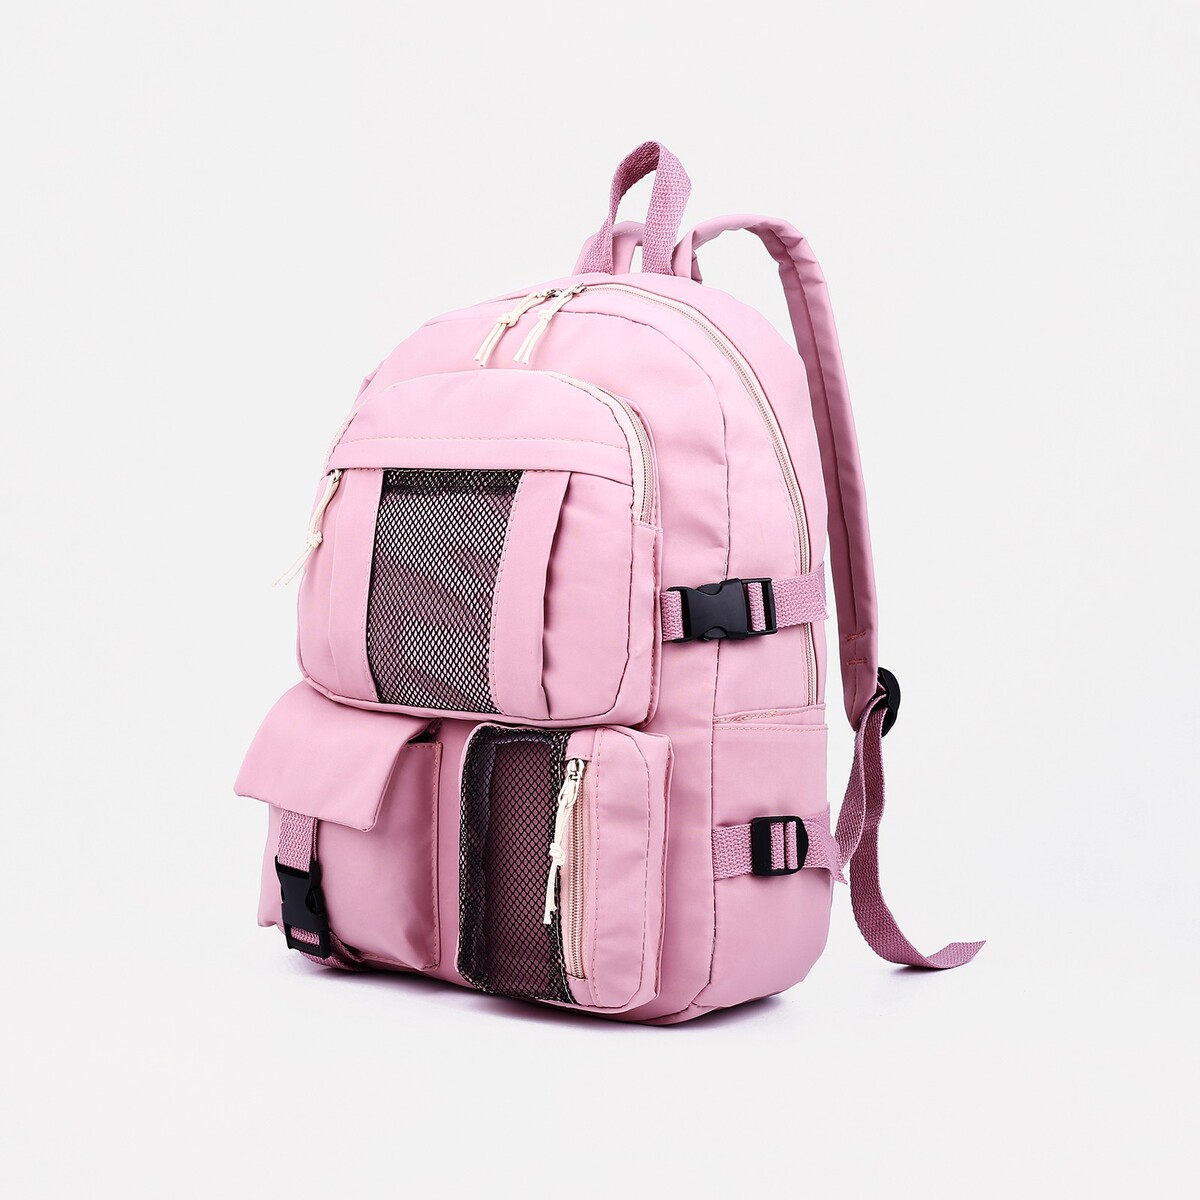 Рюкзак школьный на молнии, 5 наружных карманов, цвет розовый рюкзак школьный из текстиля на молнии 5 карманов розовый